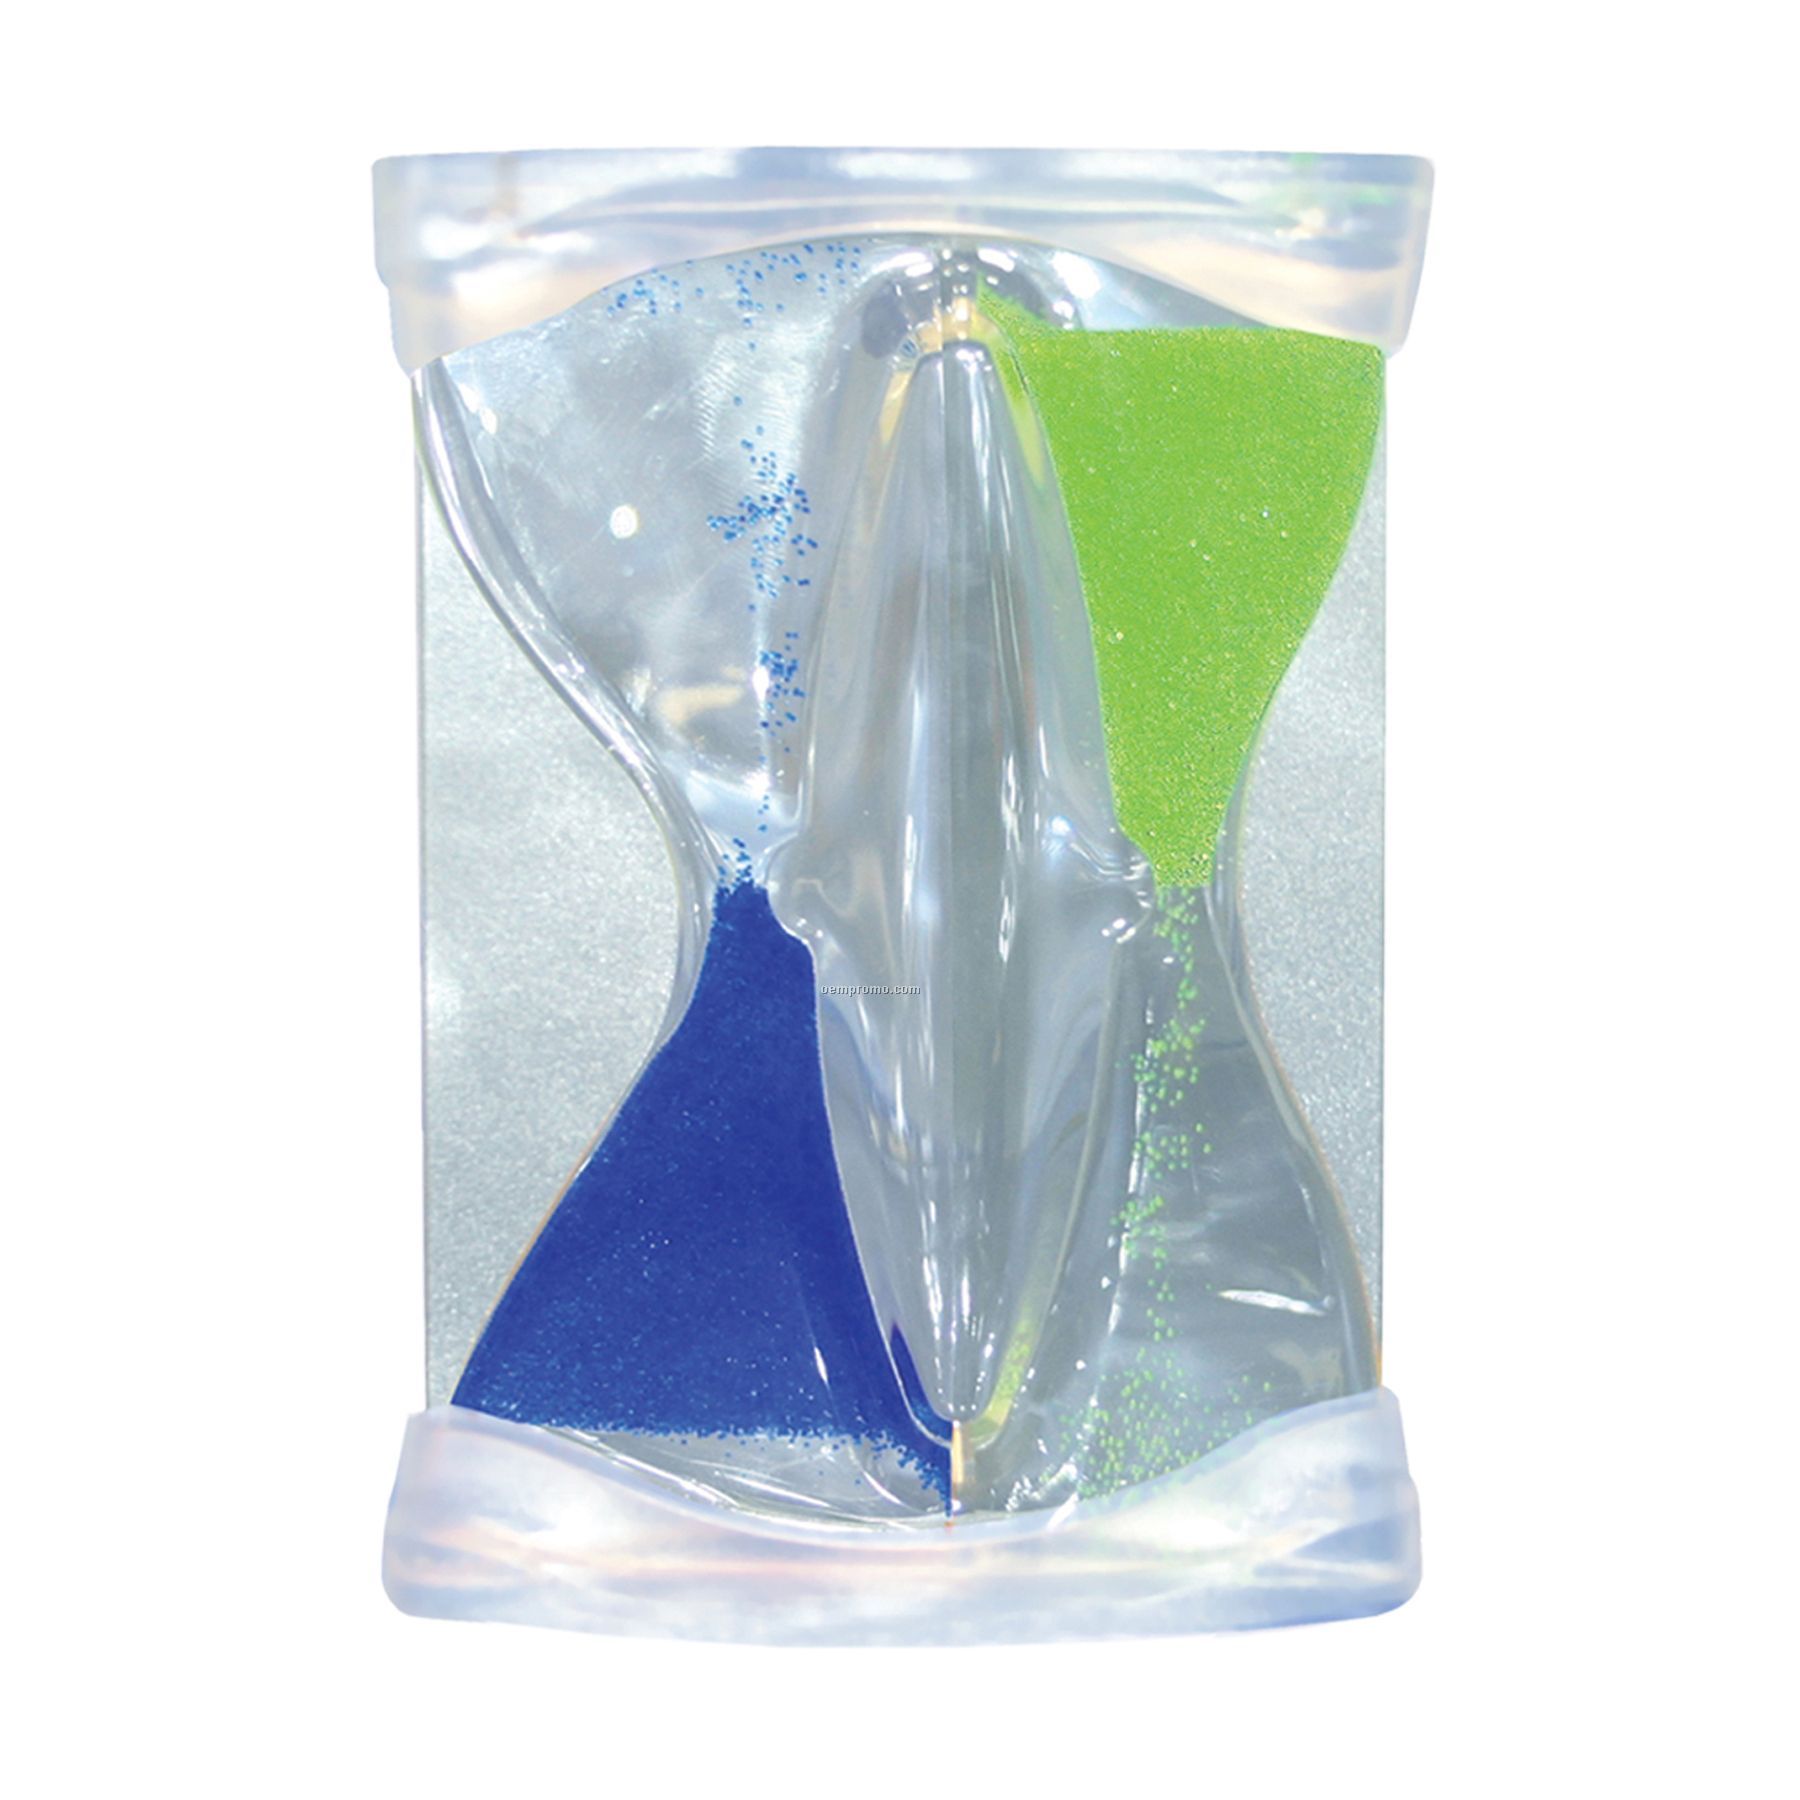 Inverse Flow Liquid Timer - Blue/Green